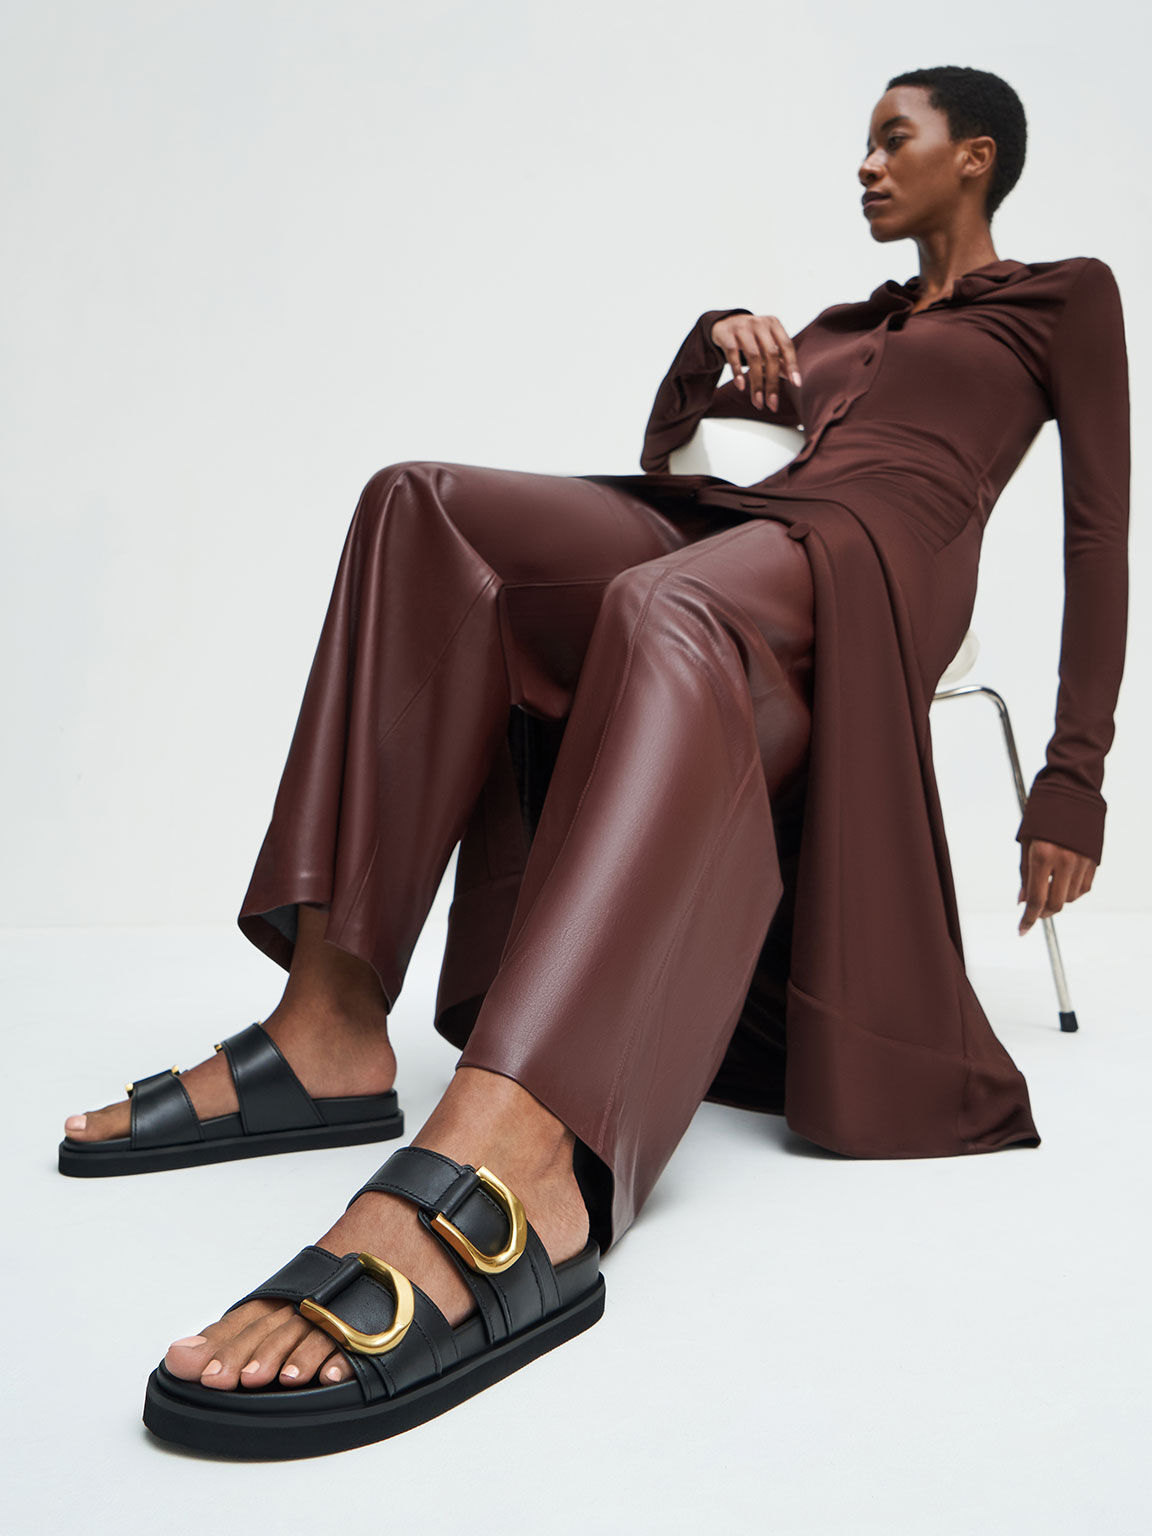 Sandal Slides Gabine Buckled Leather, Black, hi-res